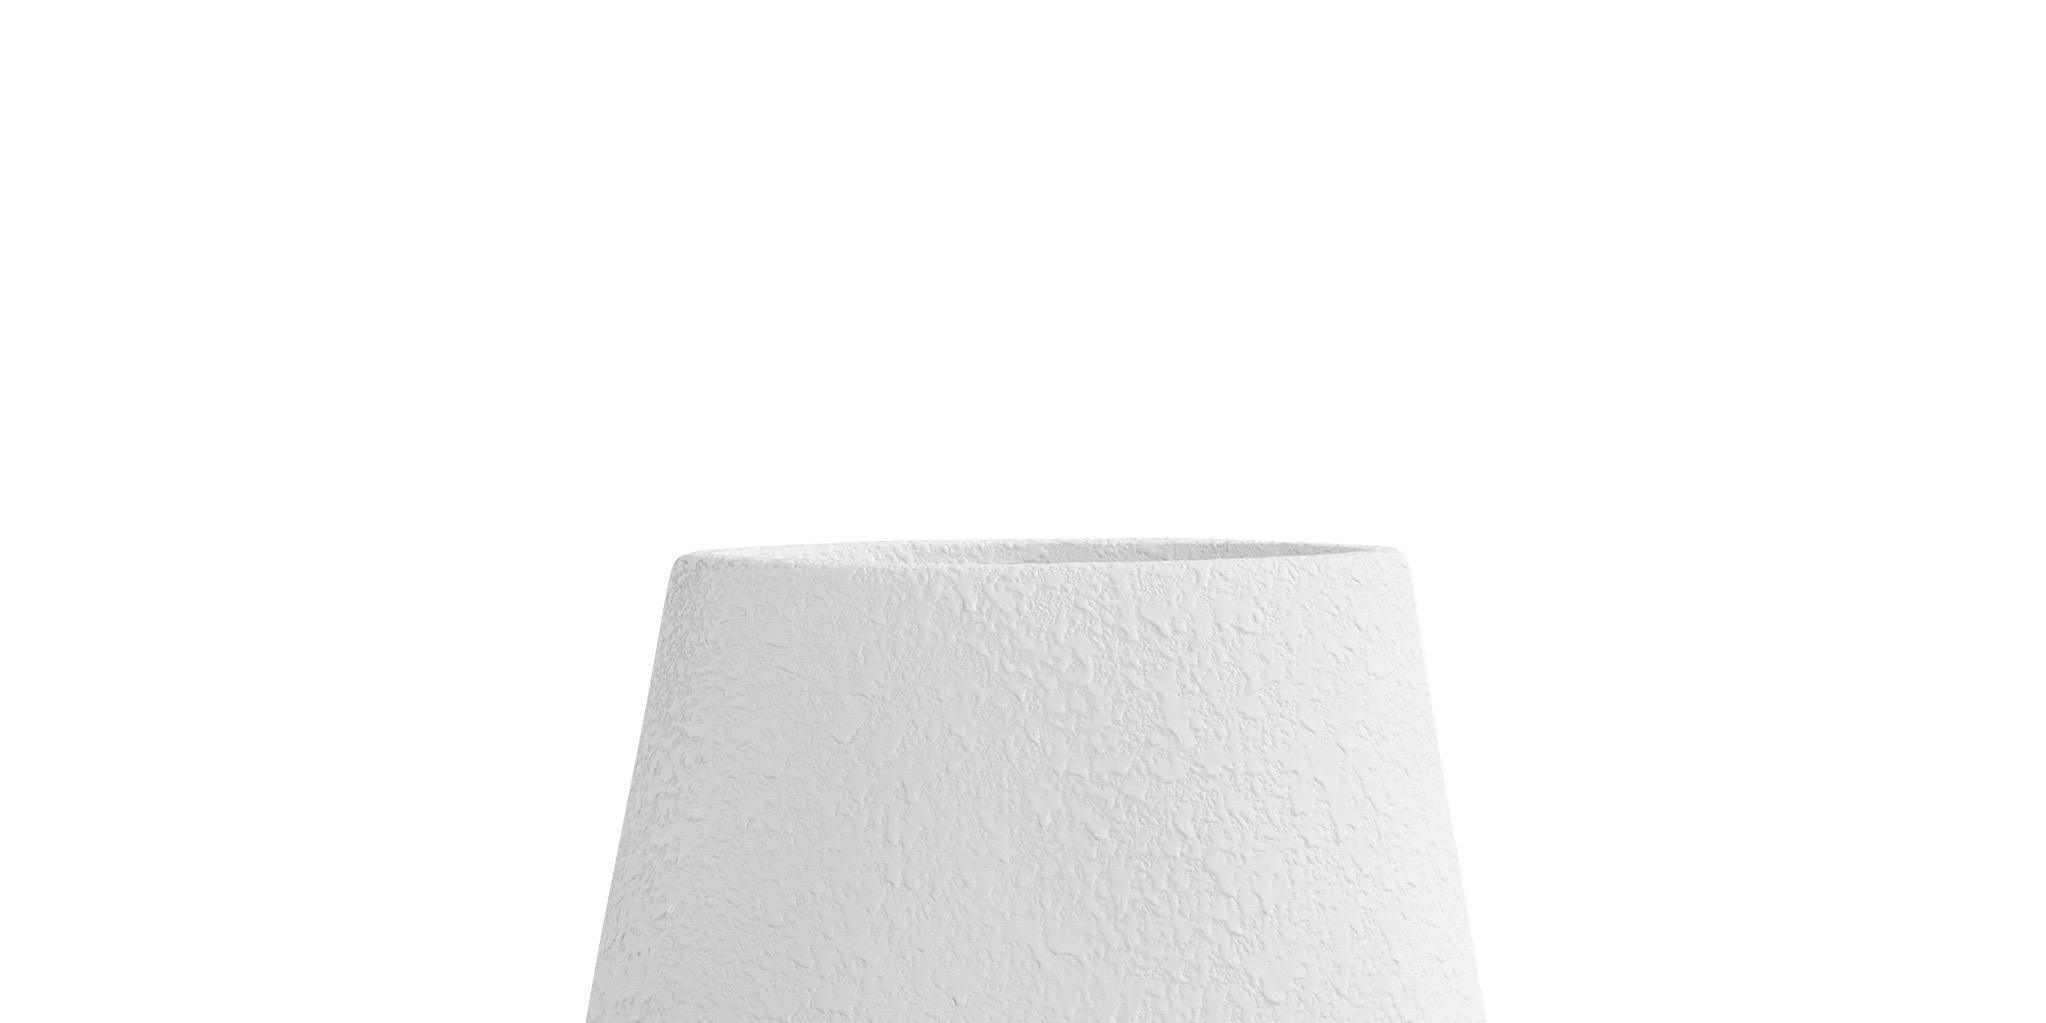 Zeitgenössische dänische Vase aus weißer Keramik mit Struktur. 
Arrow-förmiges Oberteil mit röhrenförmigem Sockel.



